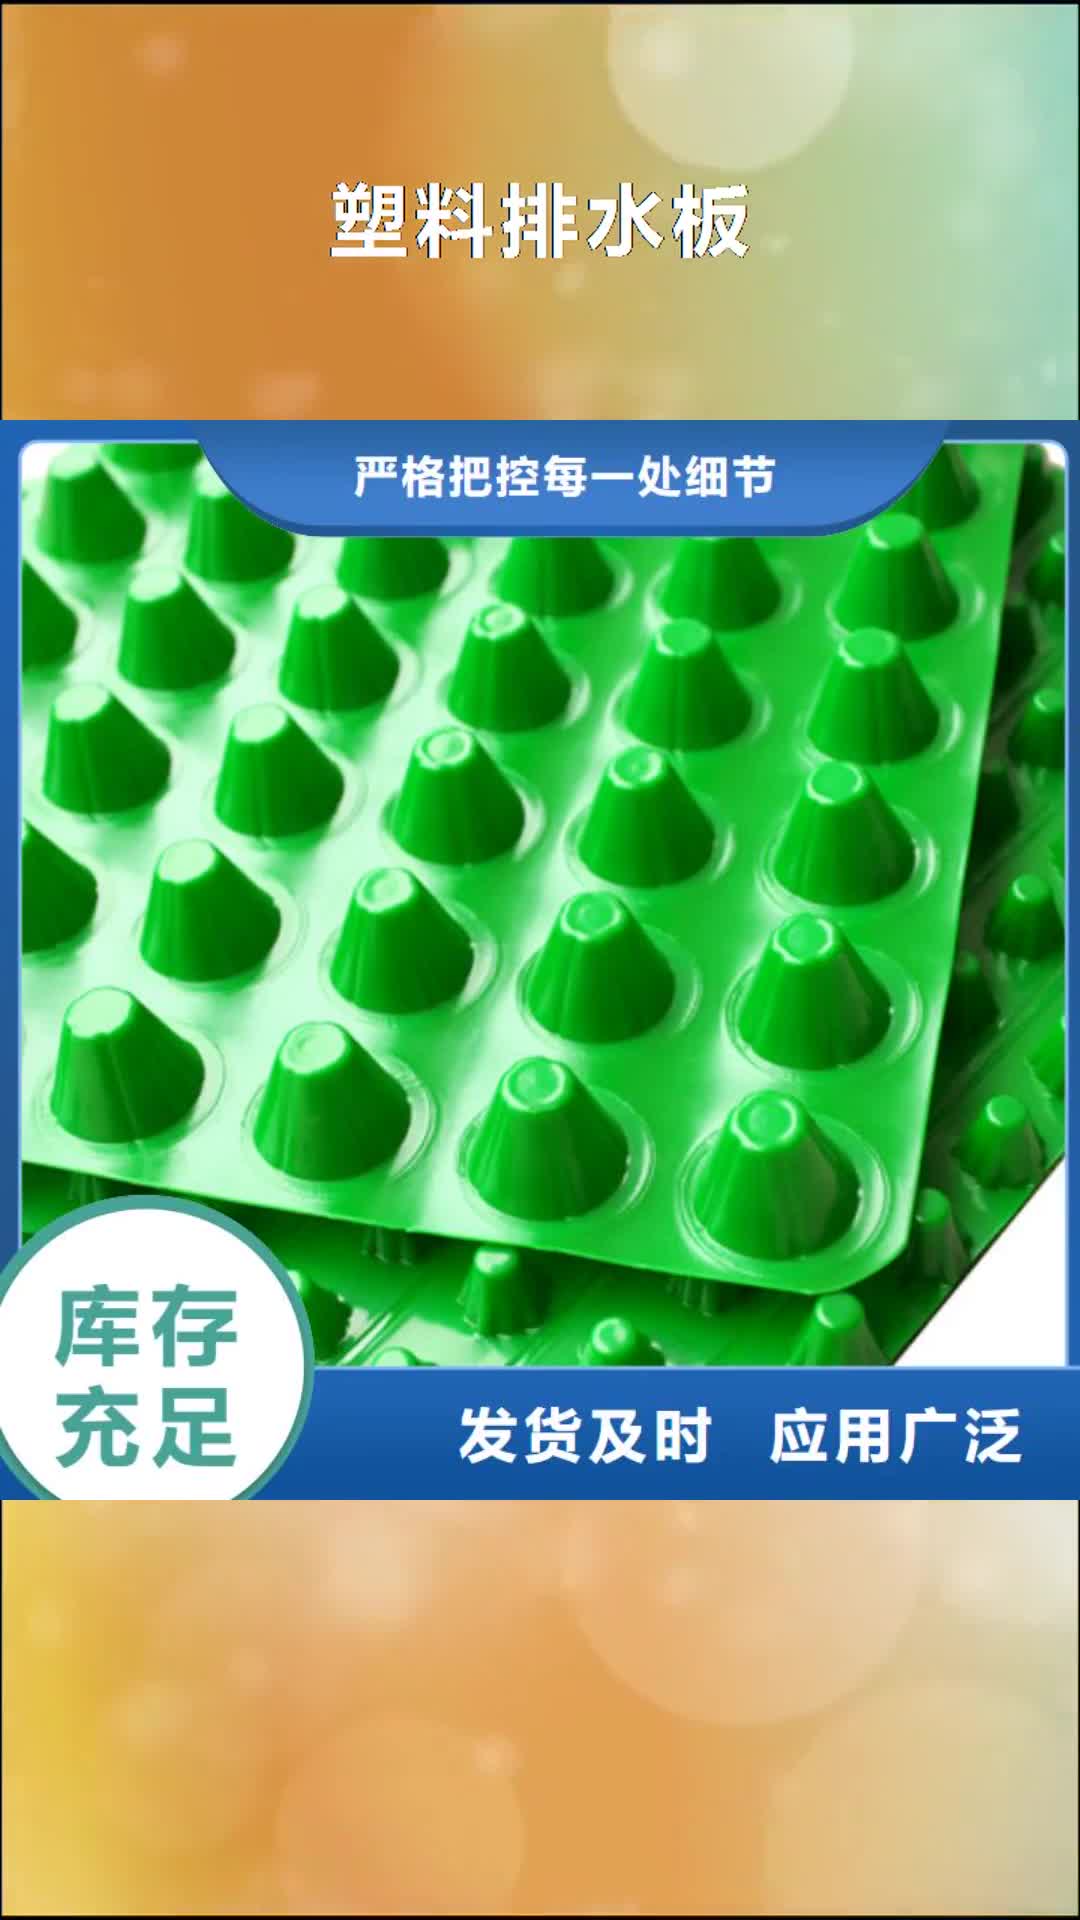 西安【塑料排水板】排水板质量安心